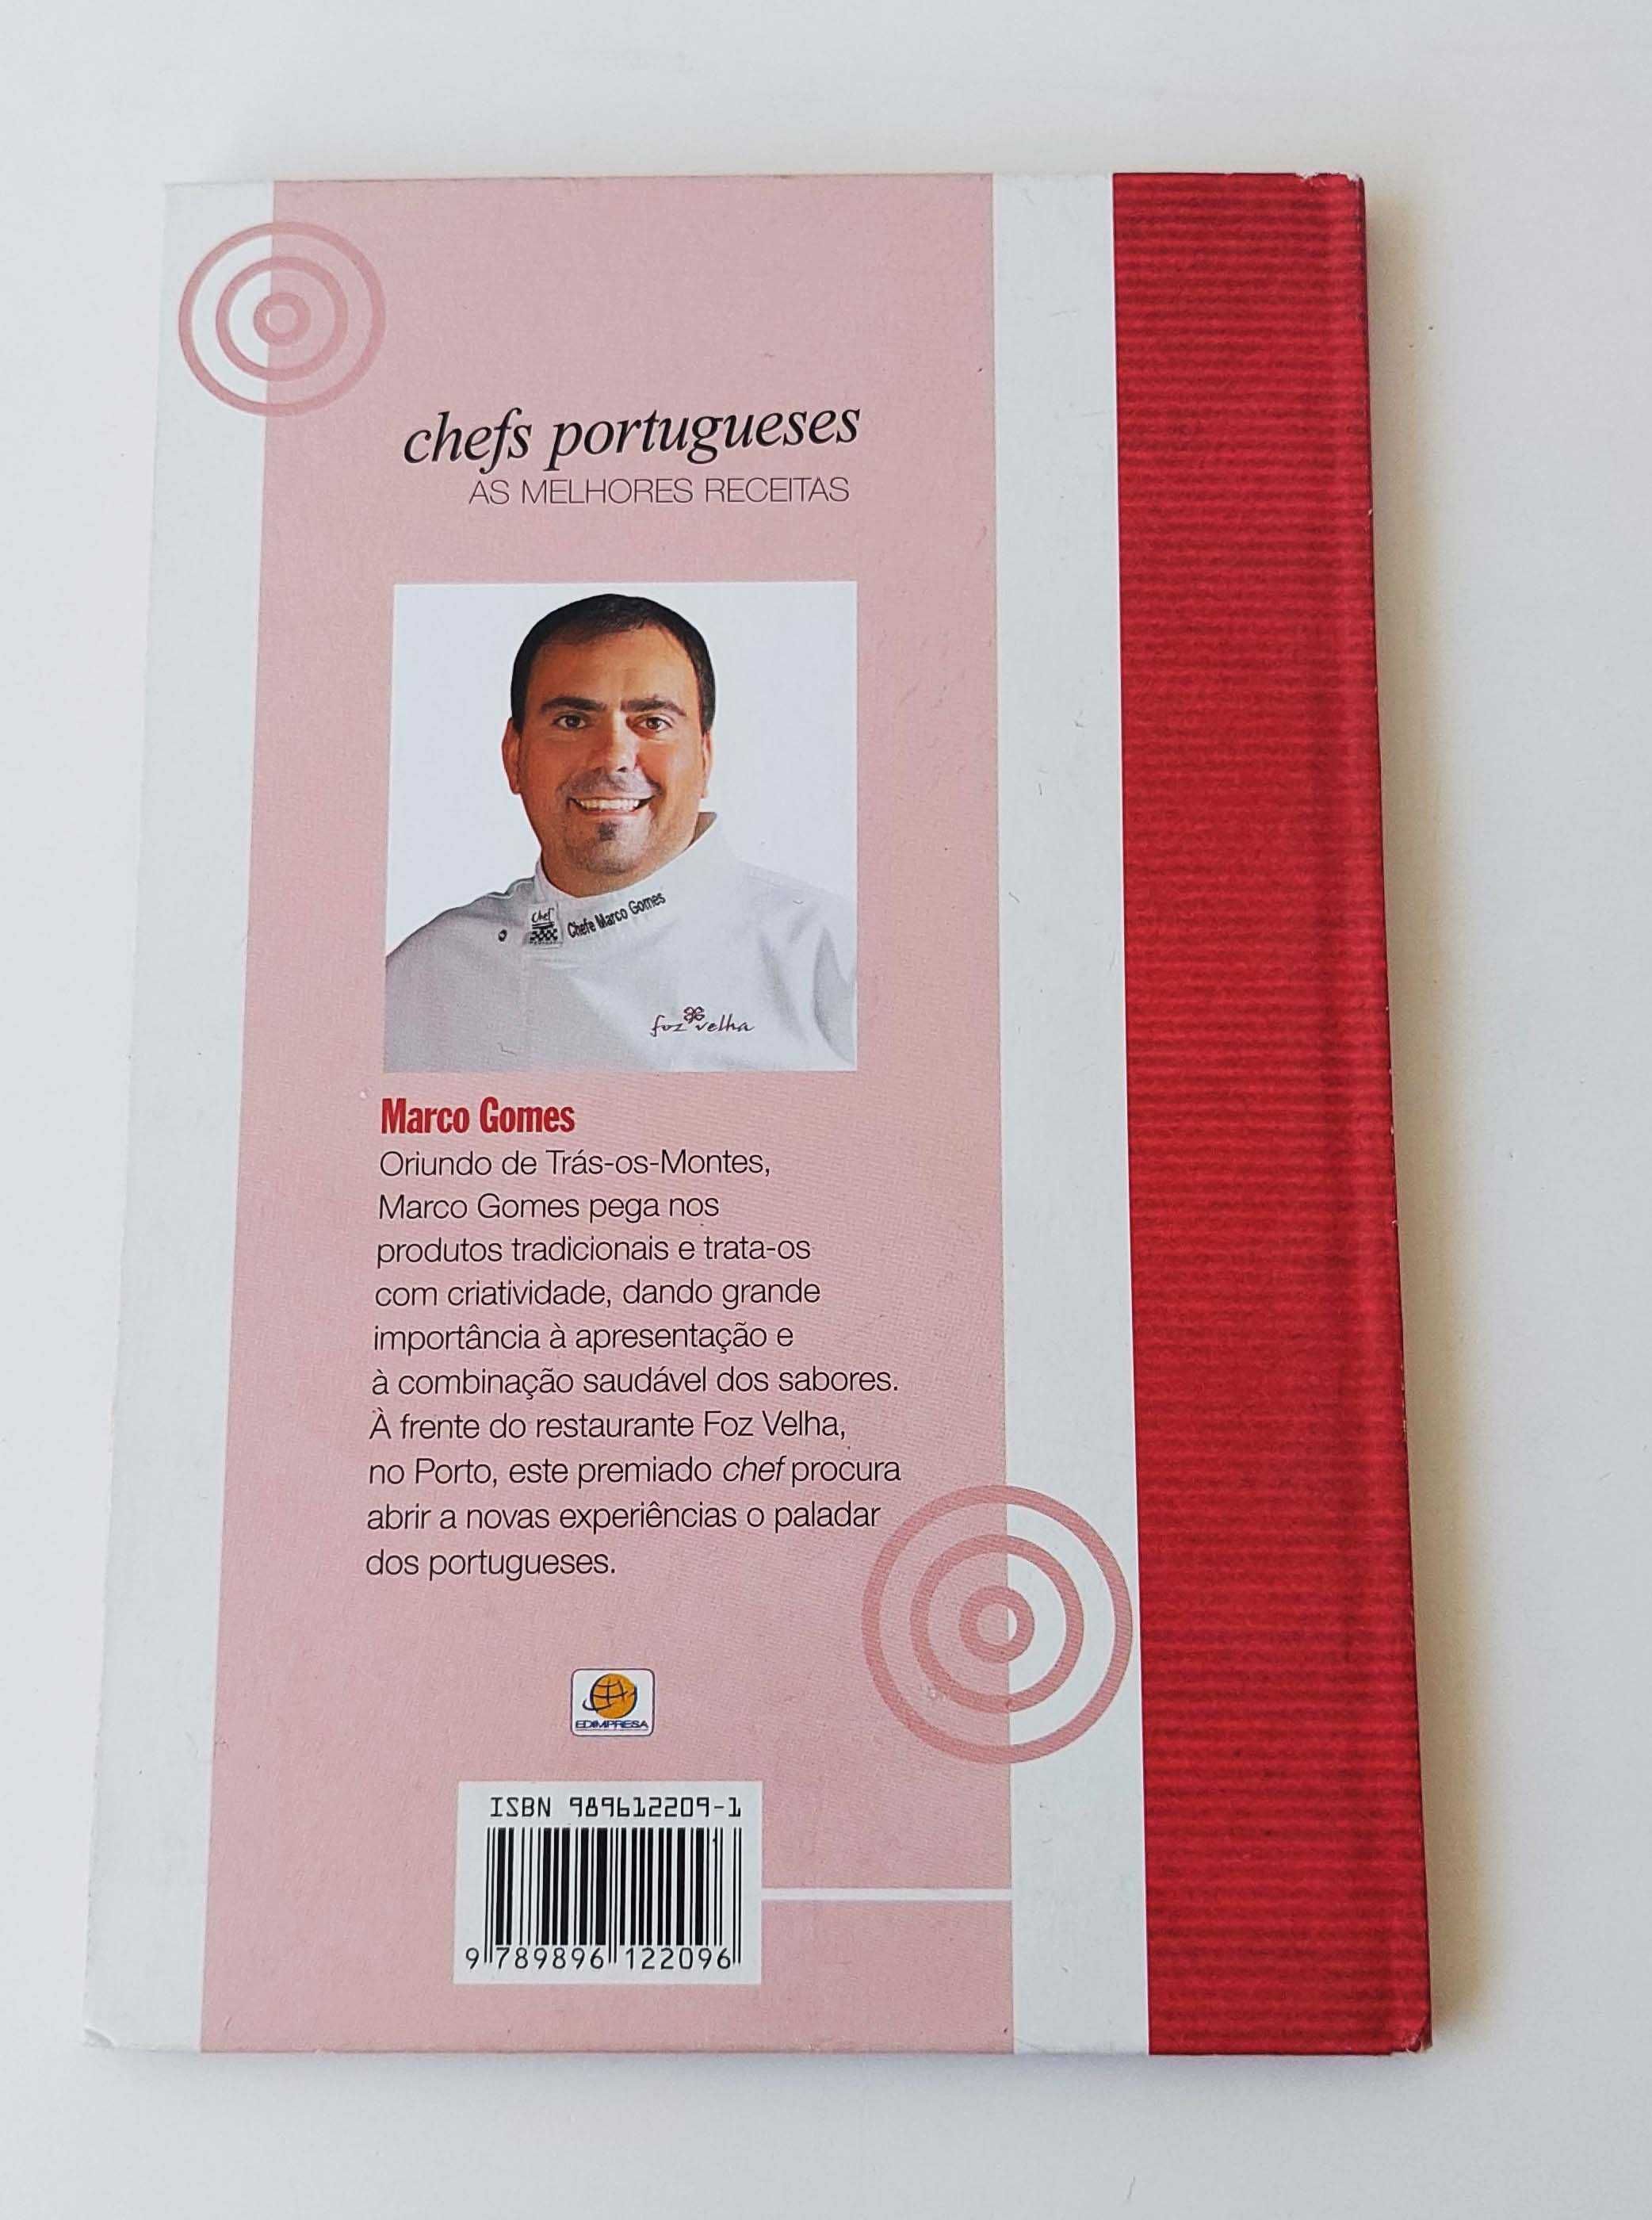 Chefs portugueses as melhores receitas Marcos Gomes